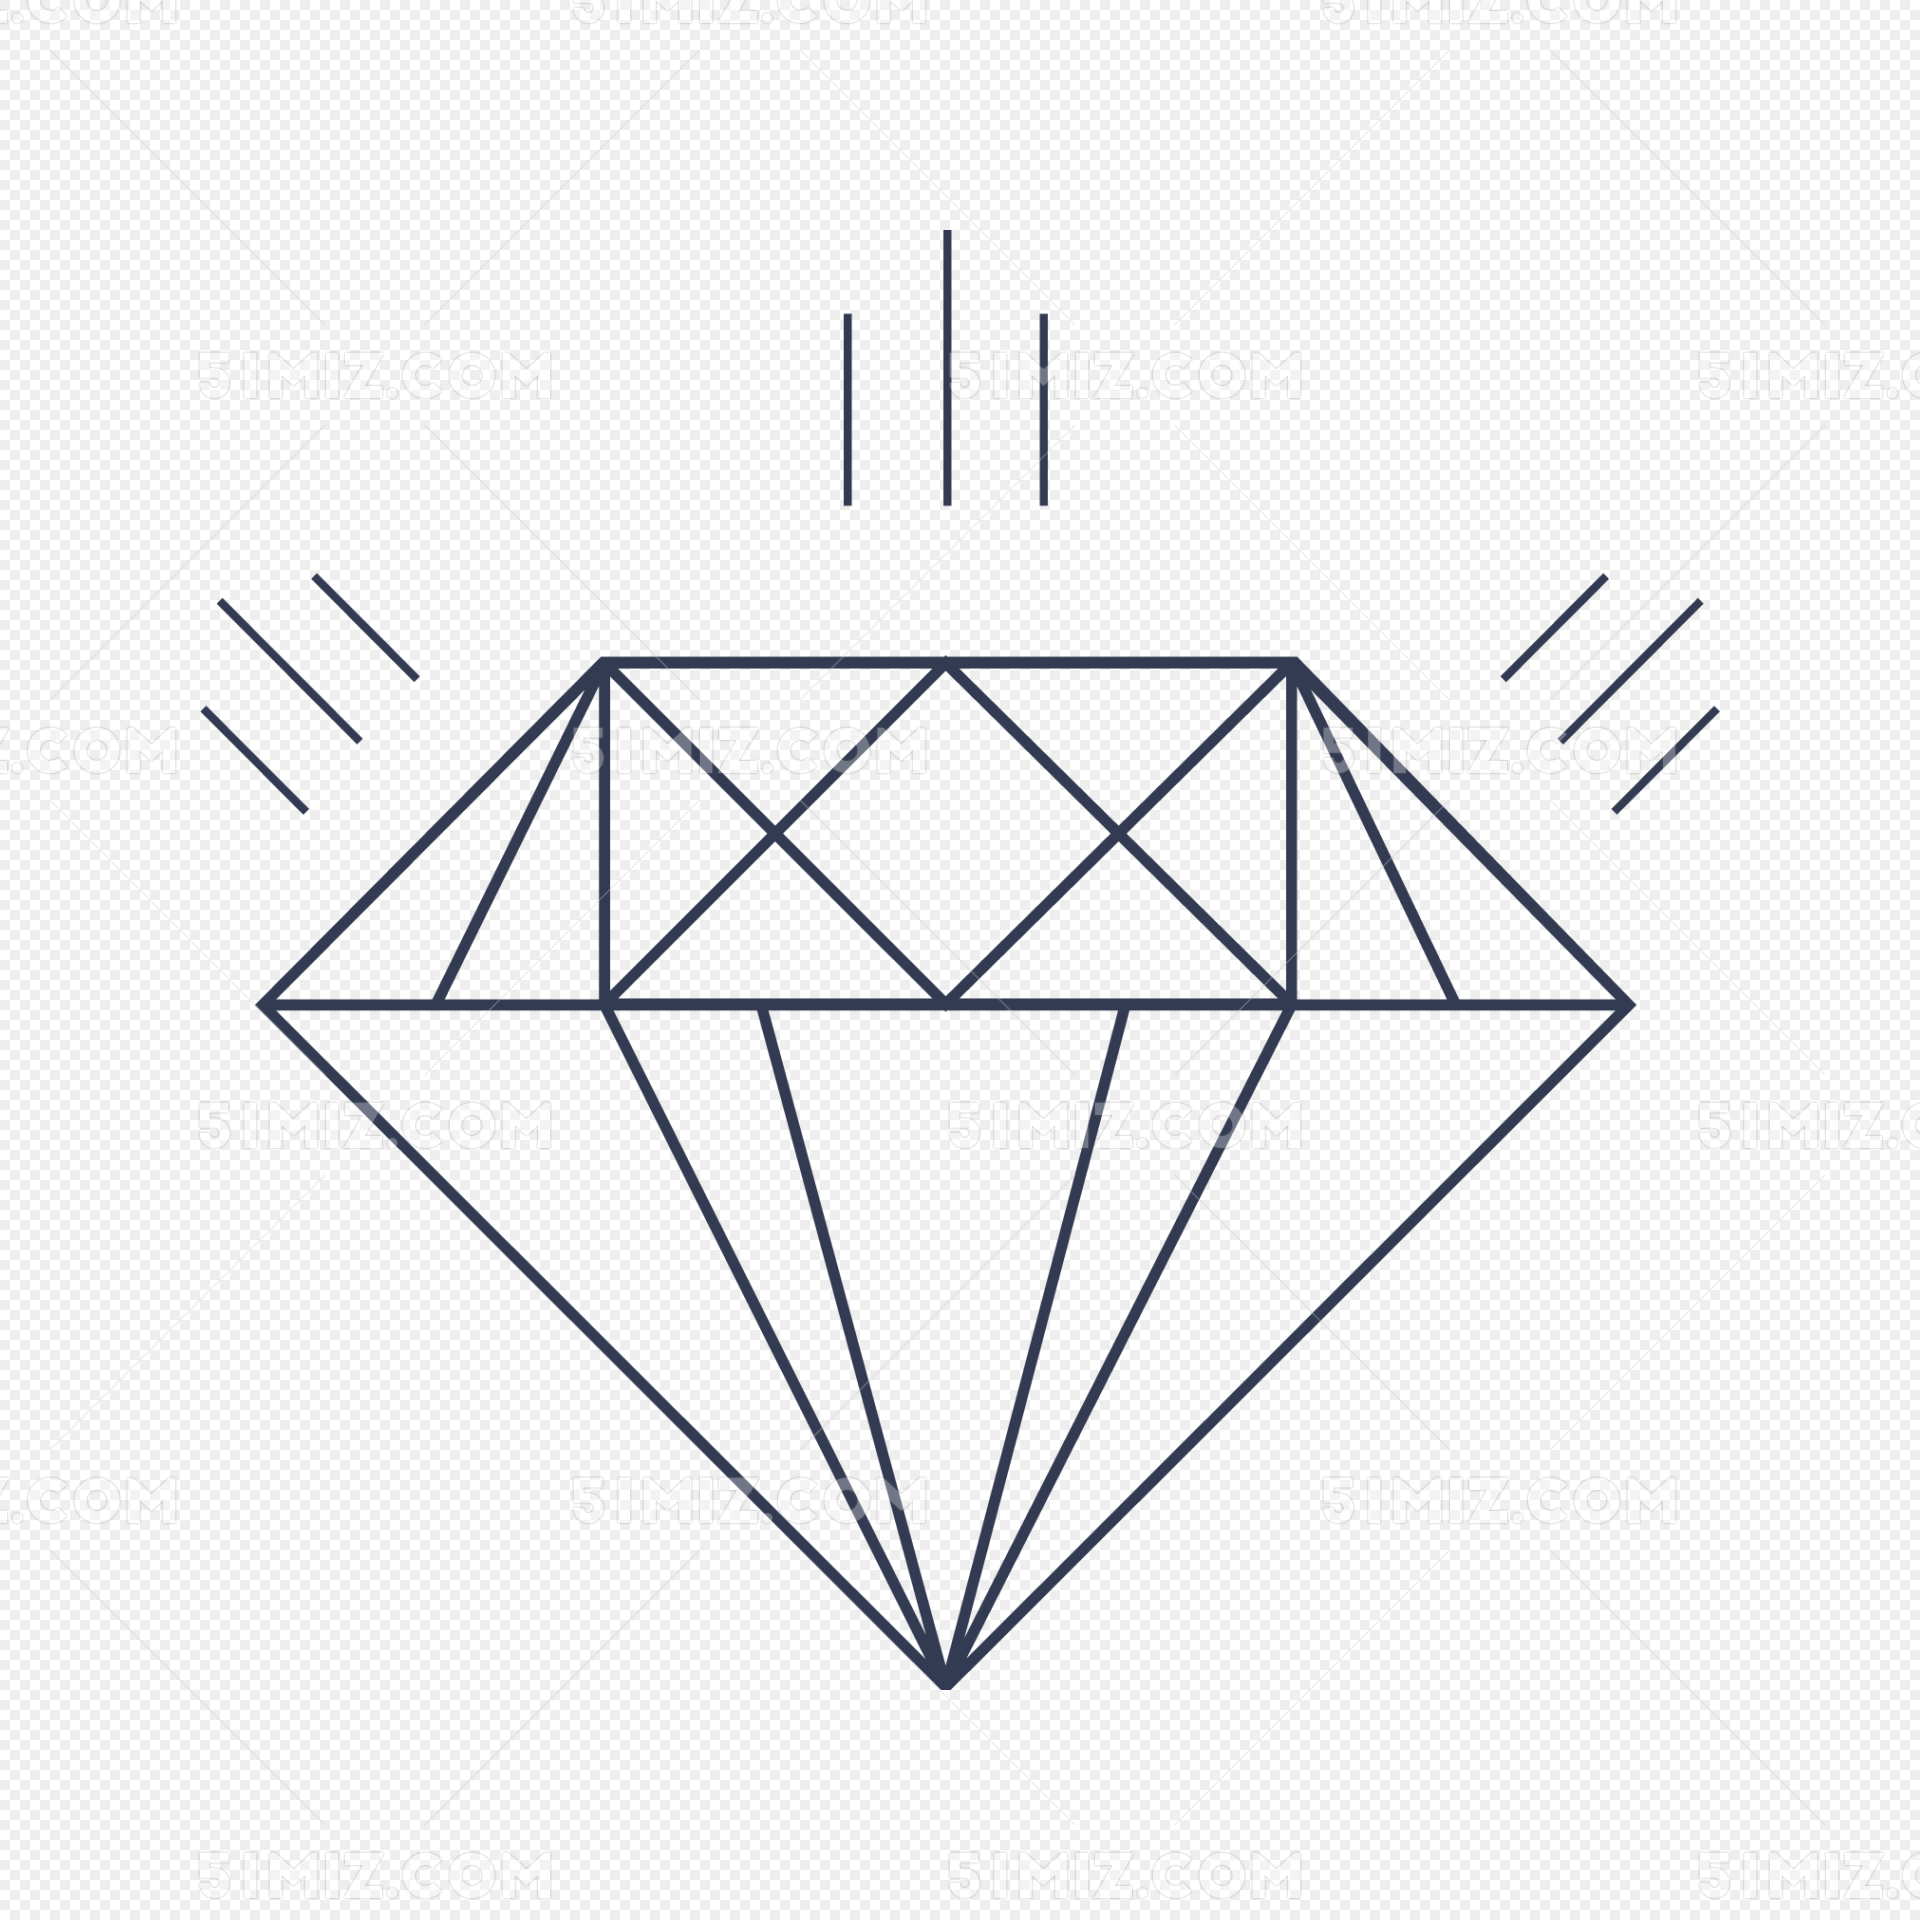 炫彩钻石金刚石单质晶体矢量素材免费下载 - 觅知网